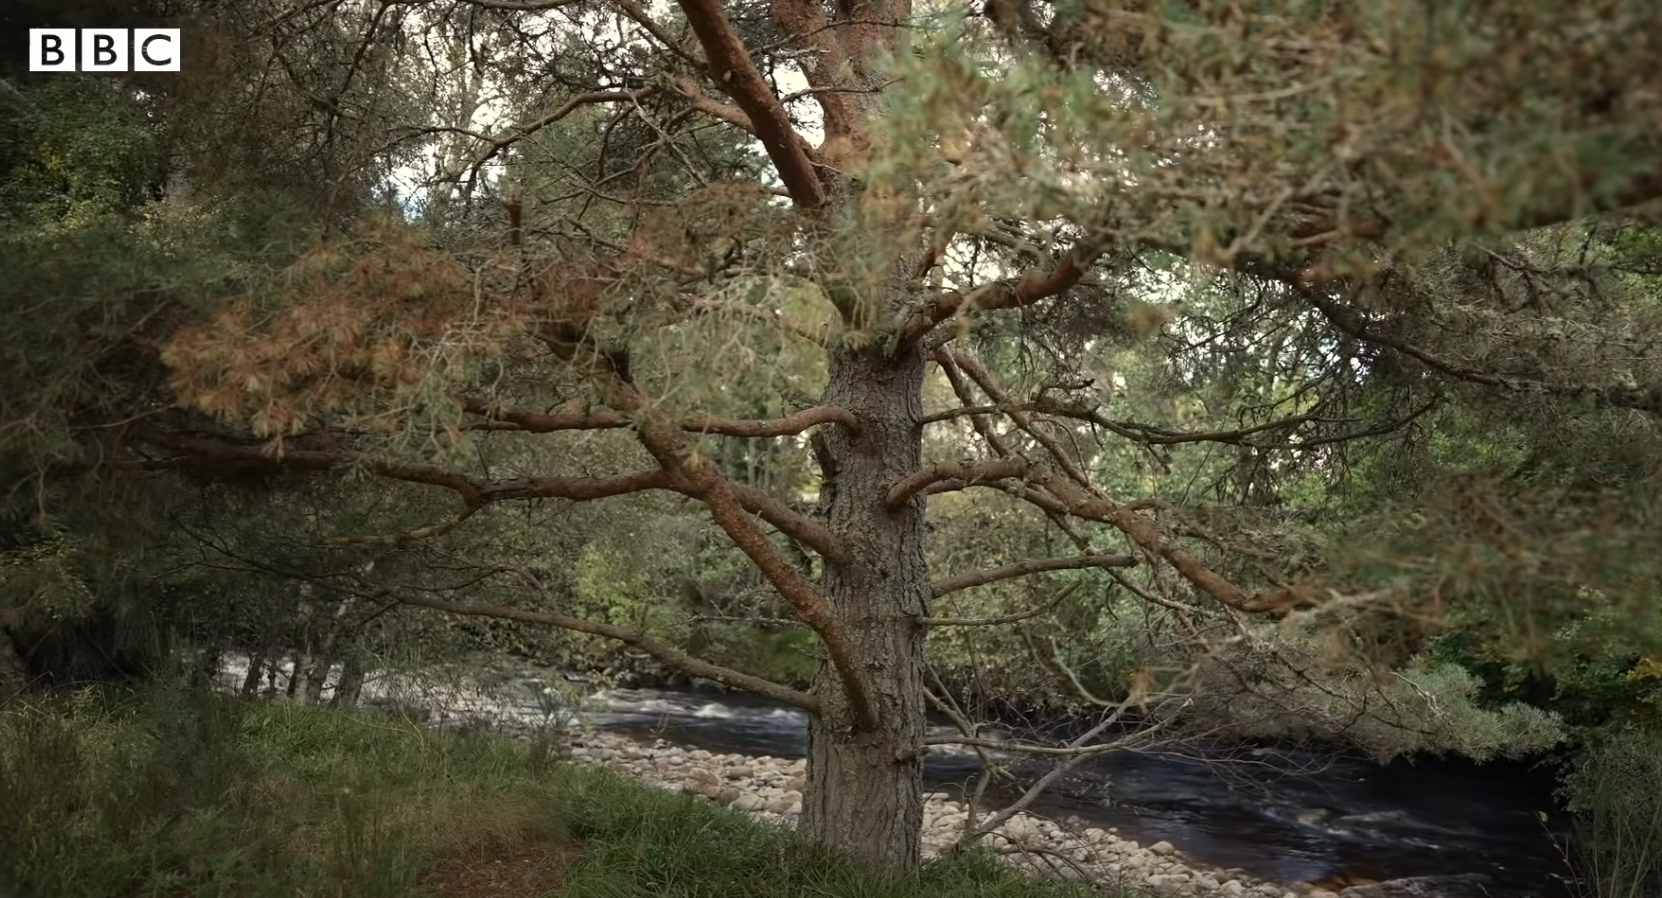 La rivière Muick dans le domaine de Balmoral, datant de 2022 | Source : YouTube/BBC News